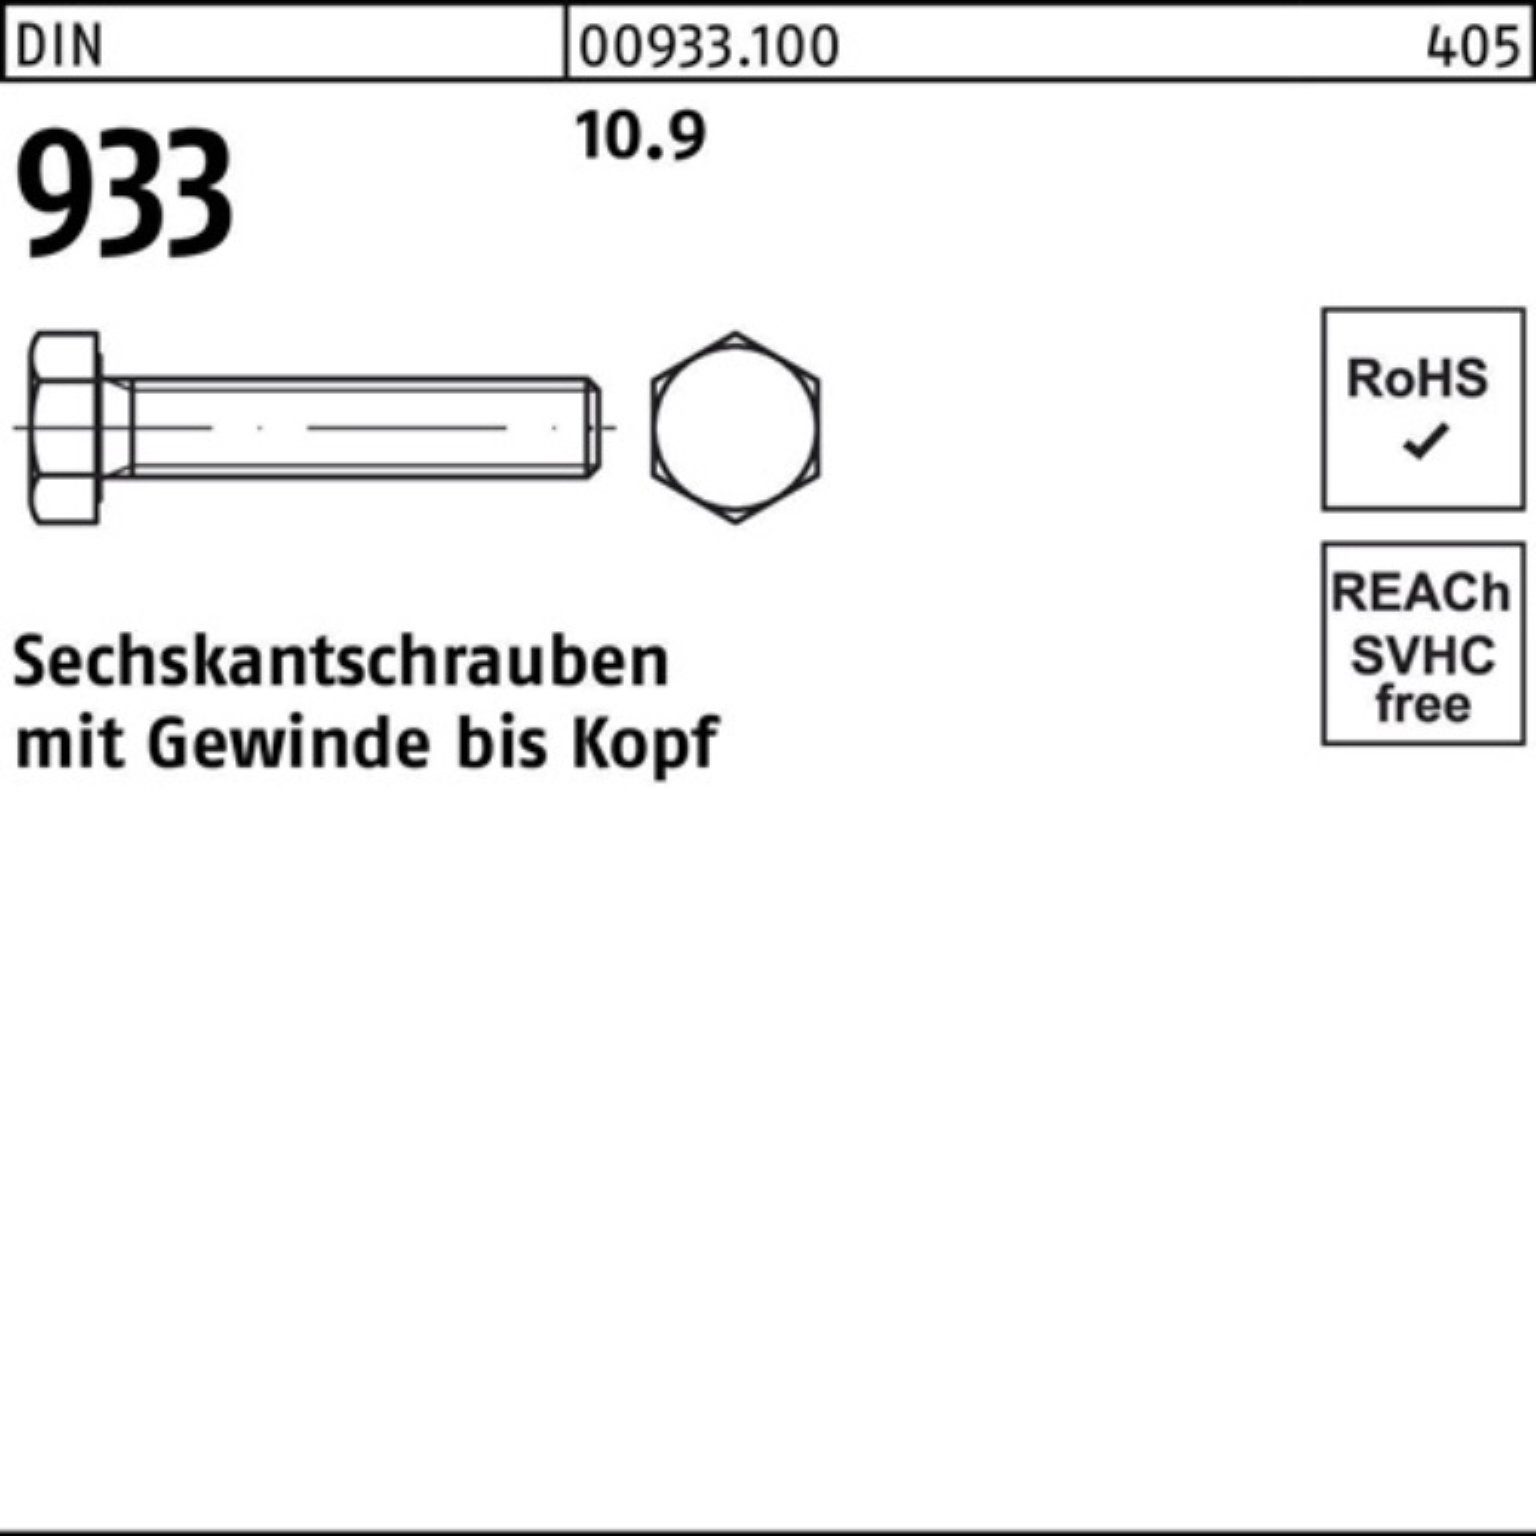 Reyher Sechskantschraube 100er Pack 93 DIN 10.9 933 DIN VG M16x 25 Sechskantschraube Stück 180